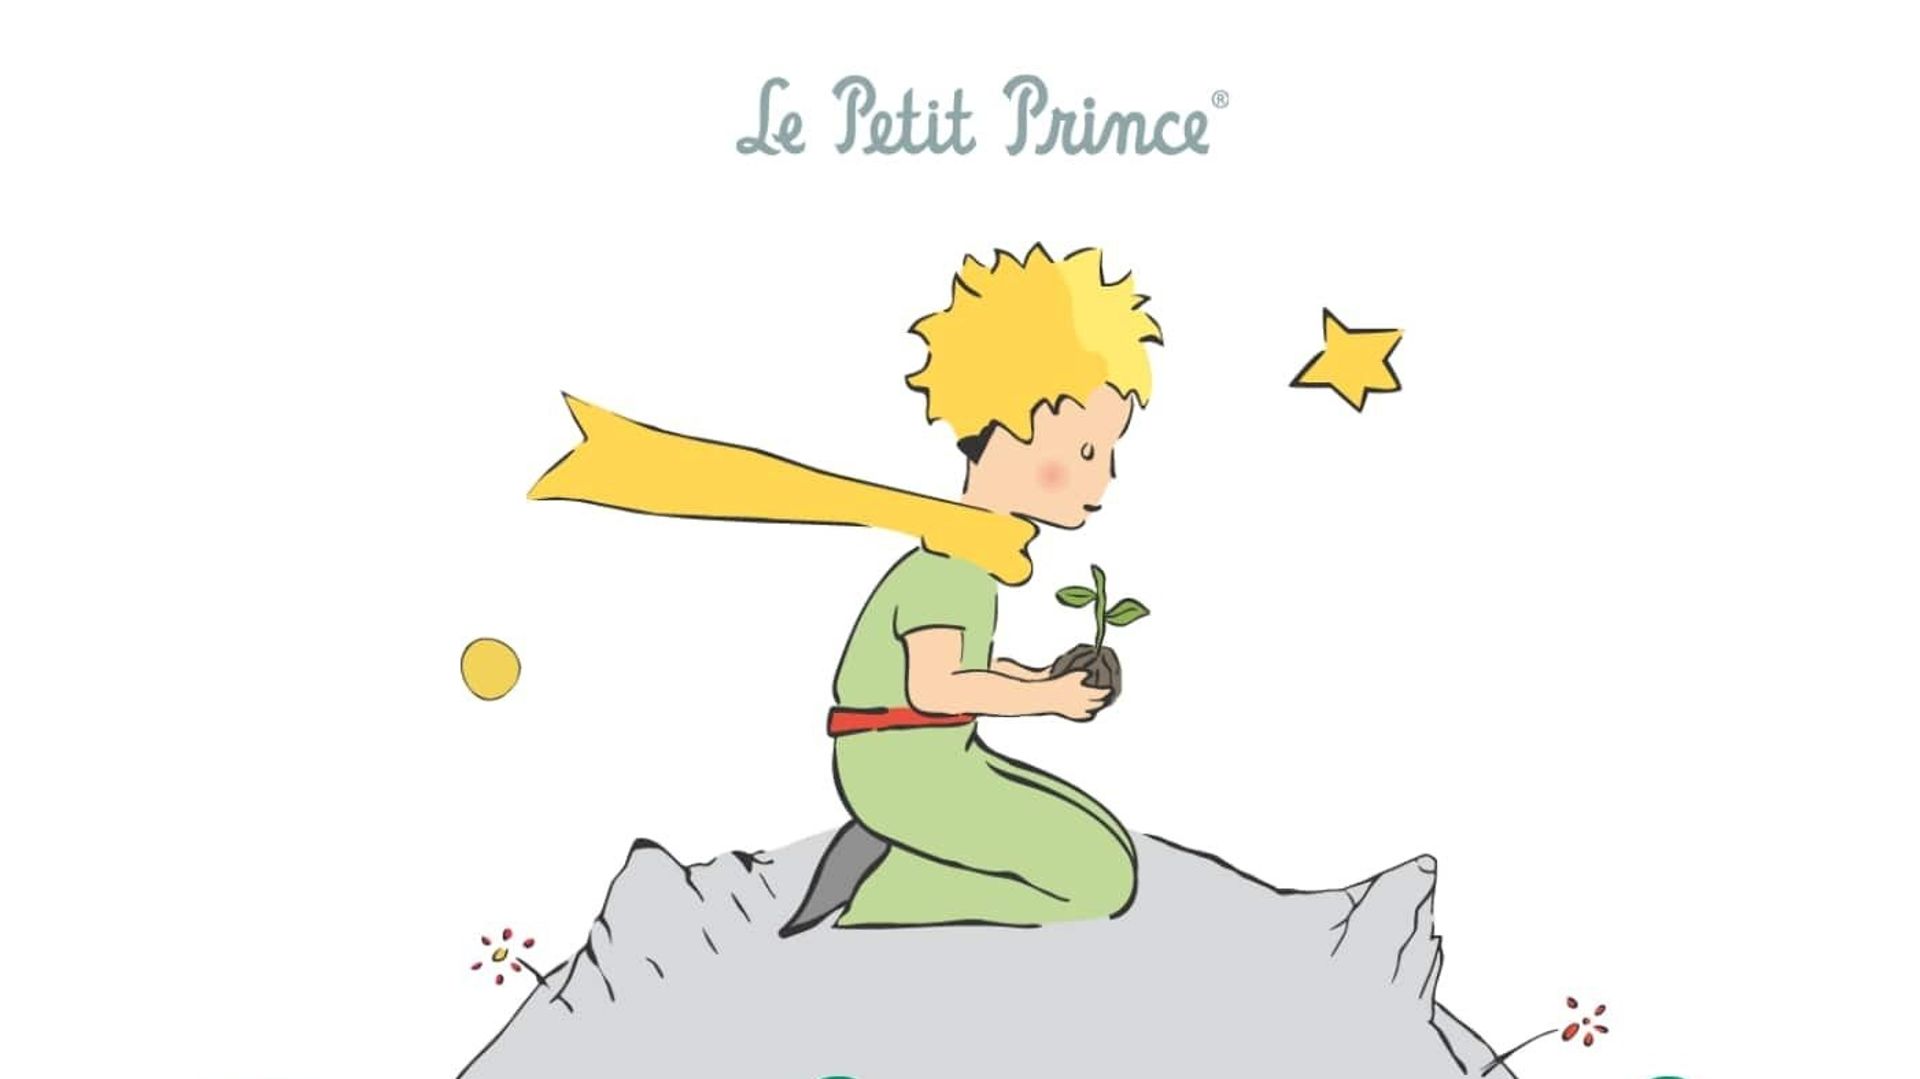 Le Petit Prince en Blu Ray : Le Petit Prince (Blu-ray 3D) - Édition Limitée  Blu-ray 3D & 2D + DVD - AlloCiné